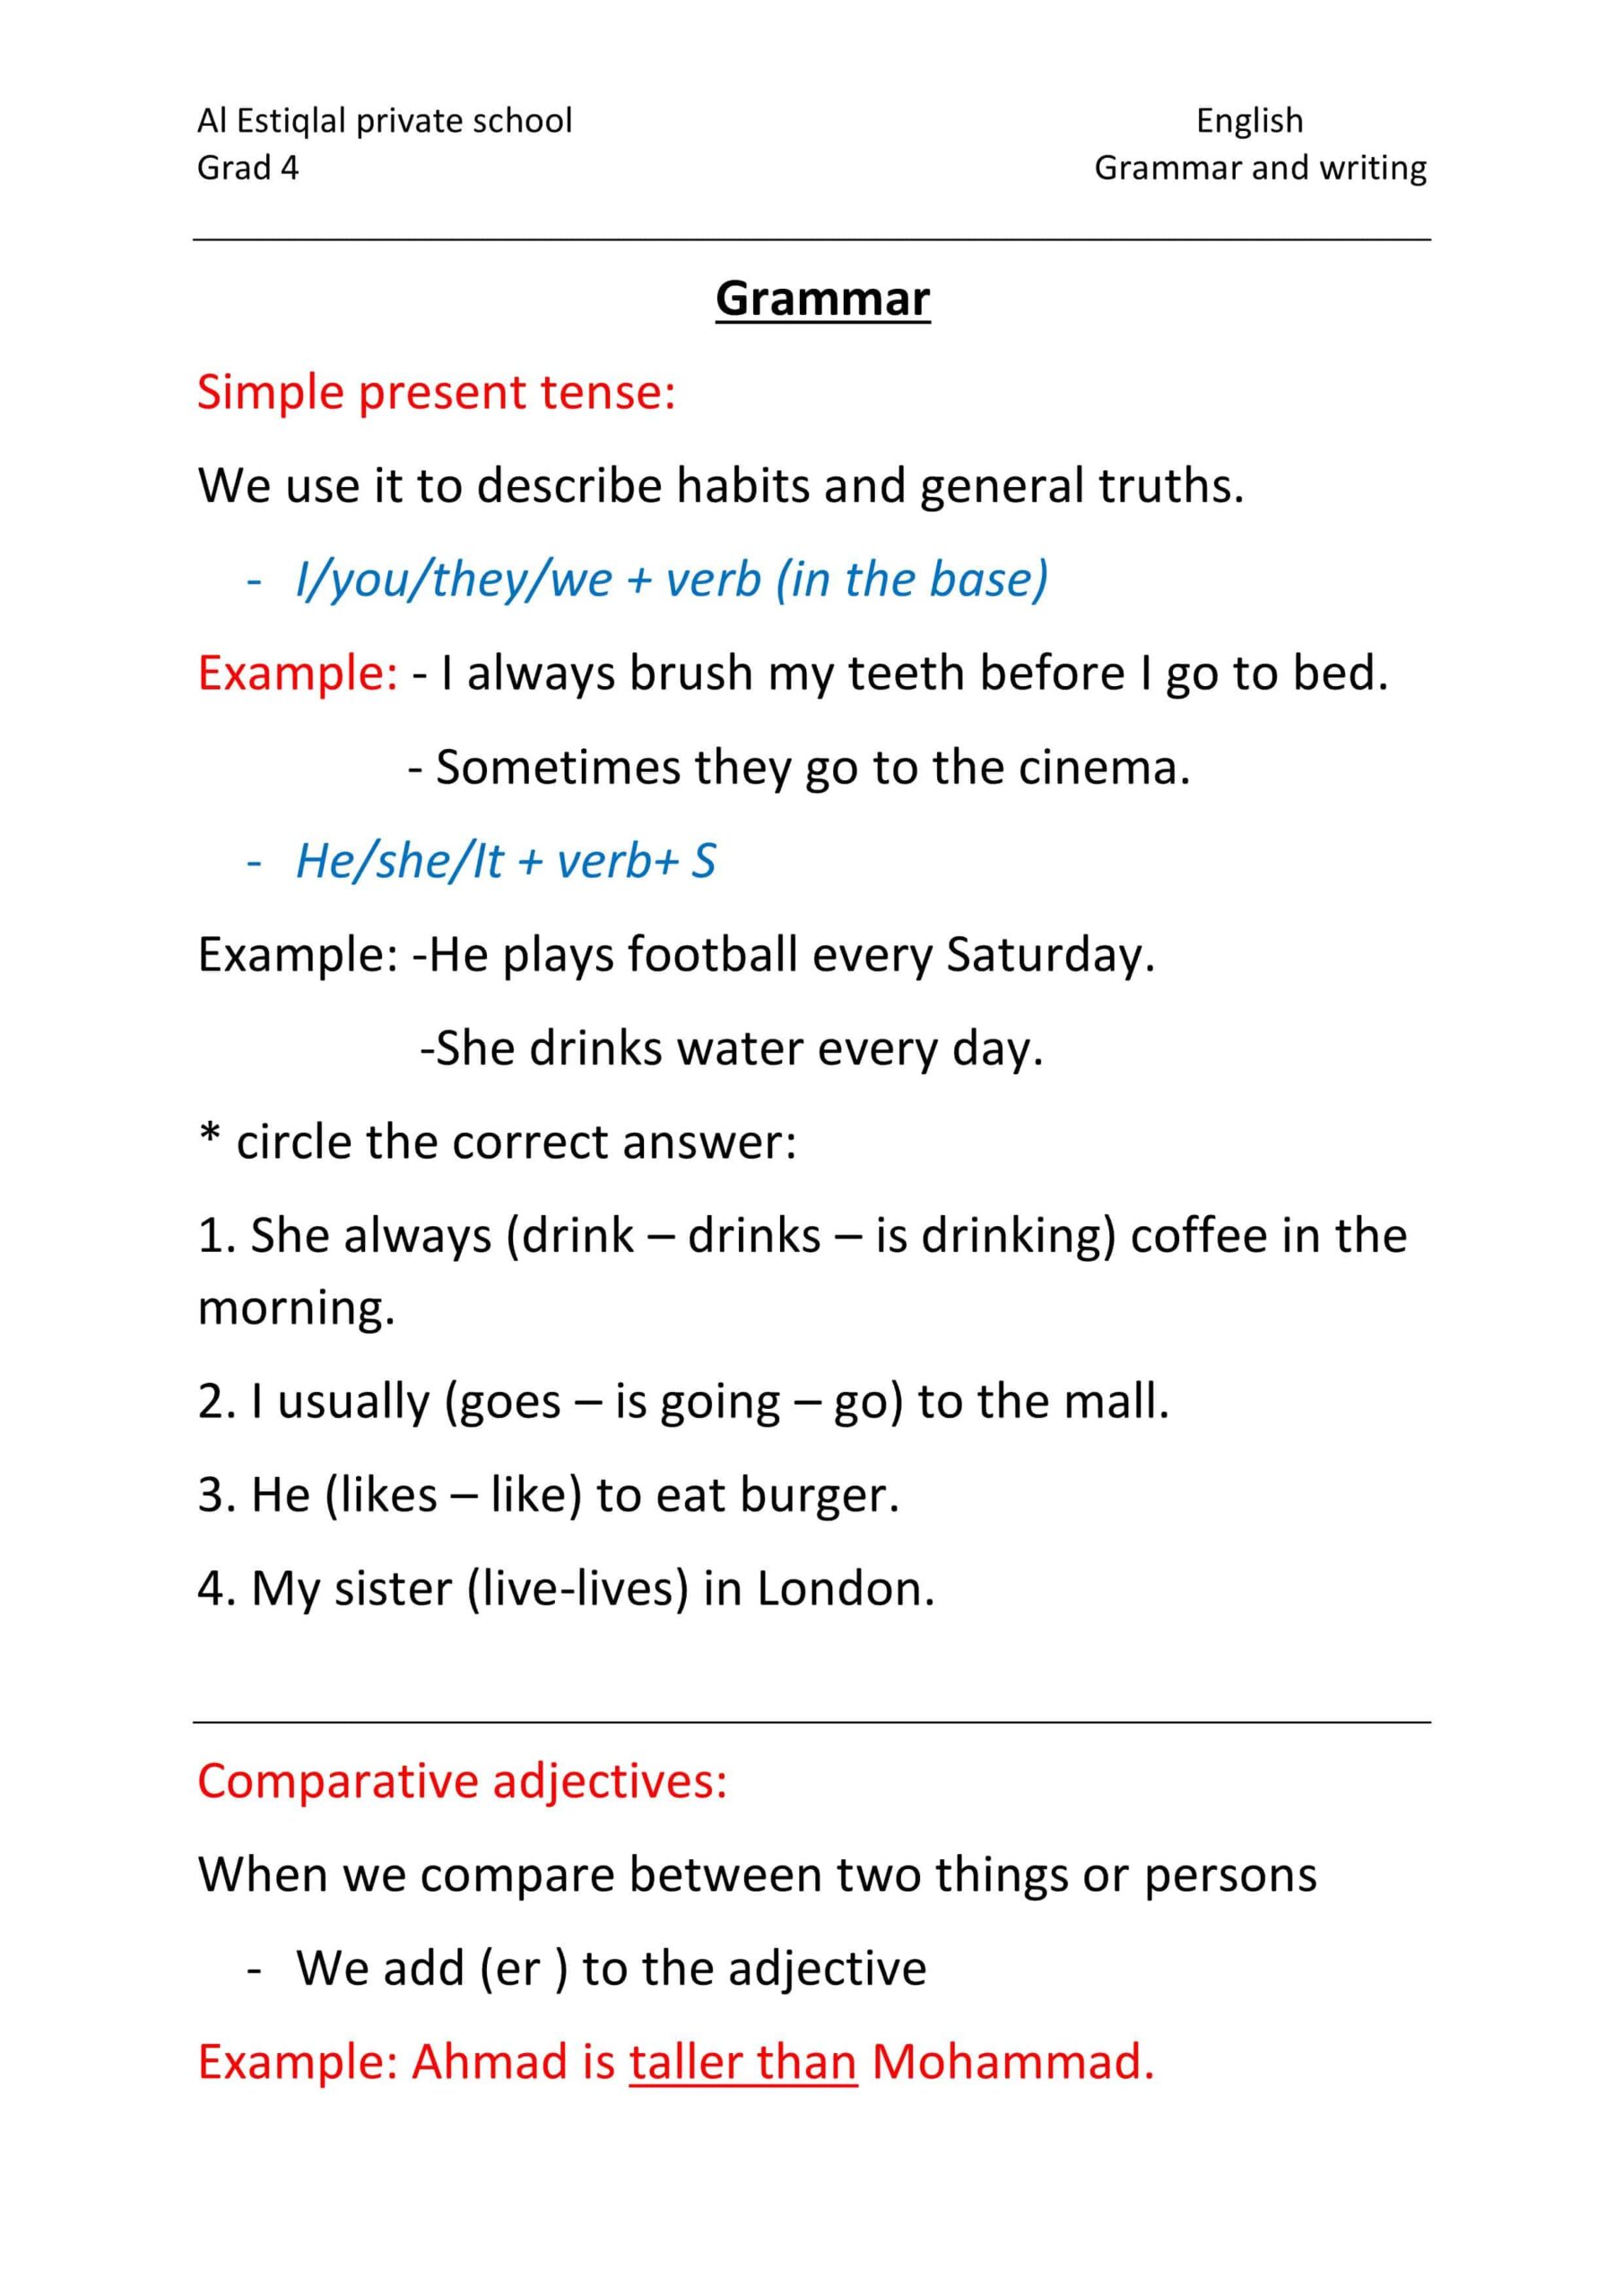 أوراق عمل Grammar and writing اللغة الإنجليزية الصف الرابع 